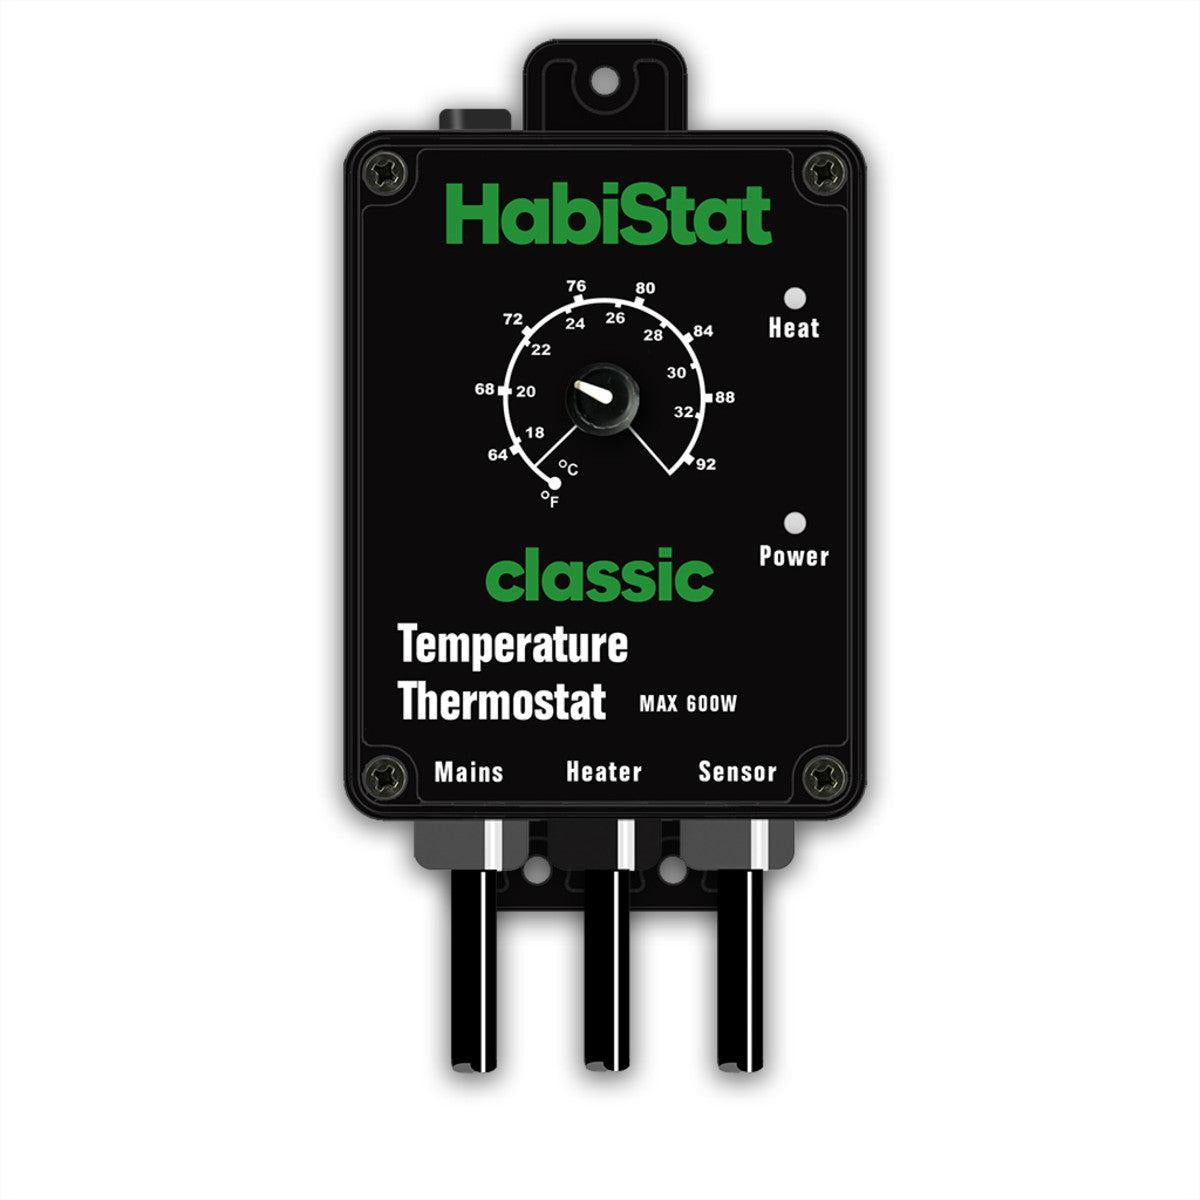 HabiStat Temperature Thermostat